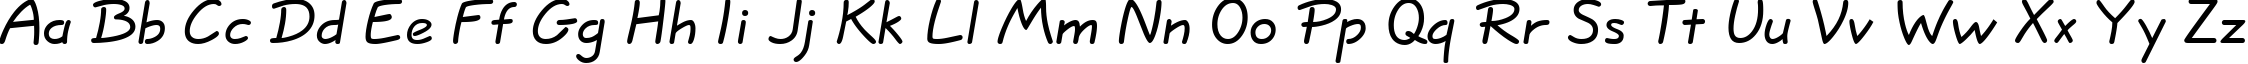 Пример написания английского алфавита шрифтом QuillScript-Normal